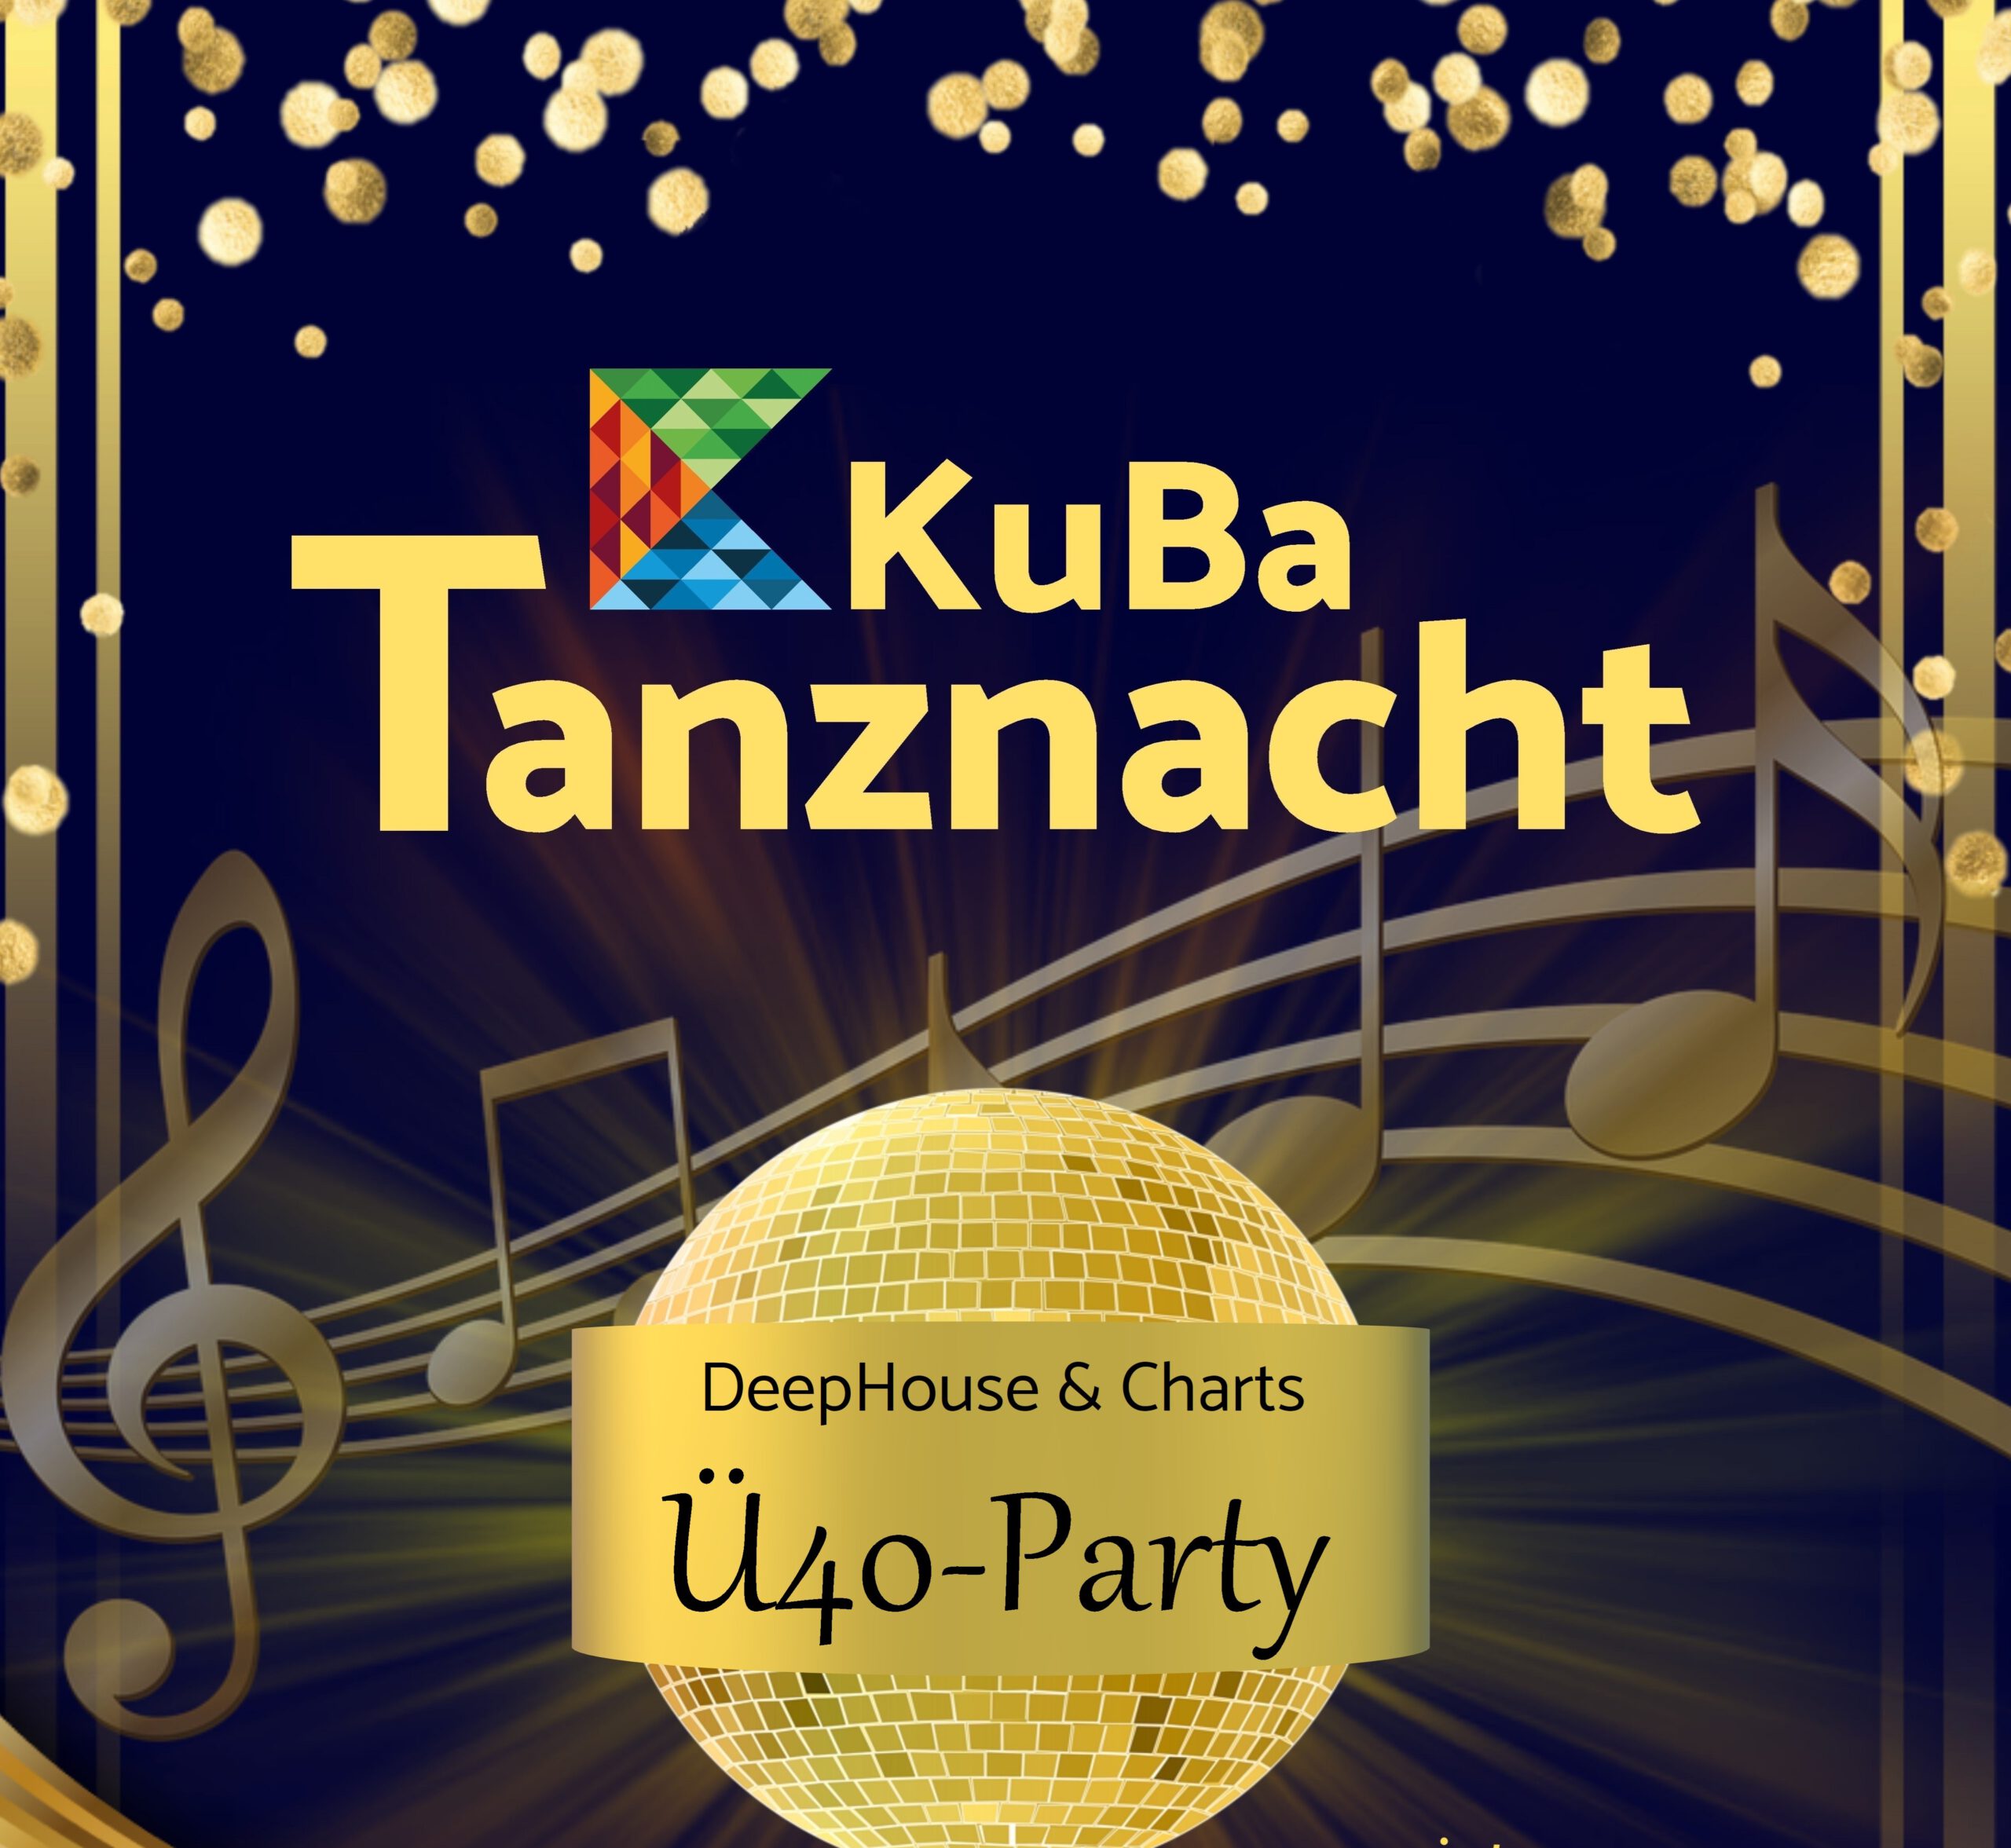 KuBa-Tanznacht Ü40 Party